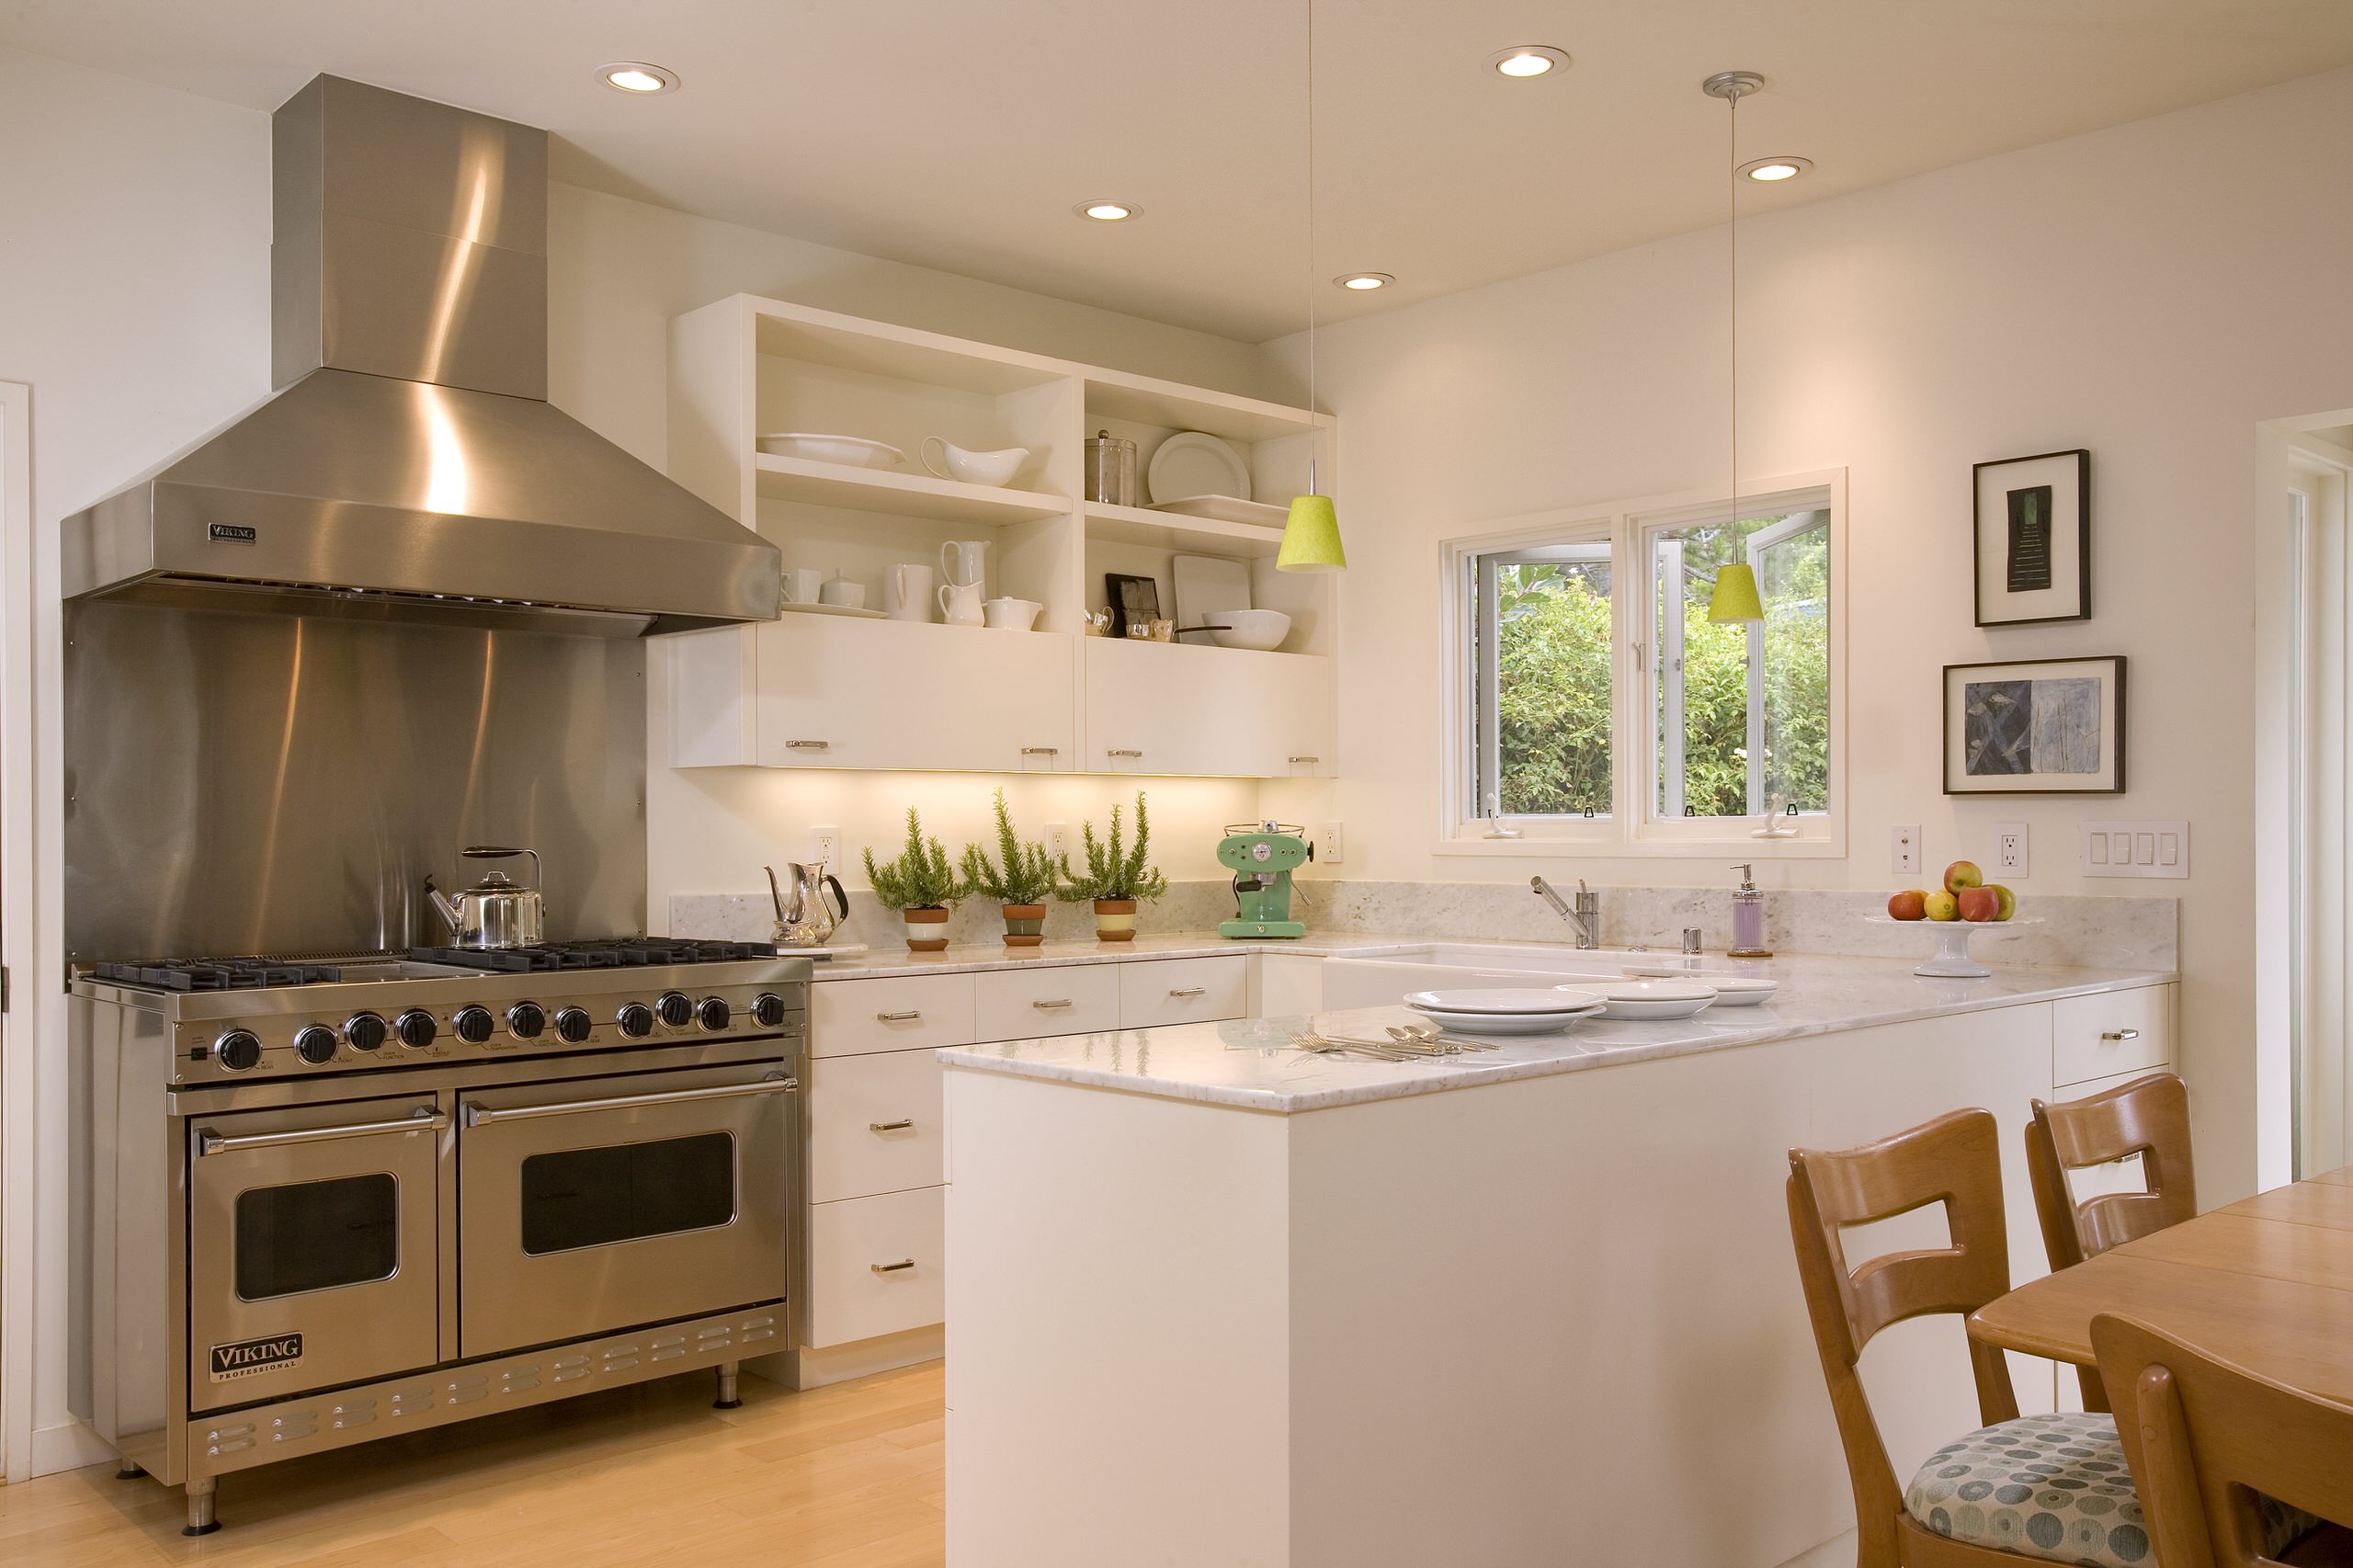 Viking Range  Kitchen design help, Modern mid century kitchen, Kitchen  models